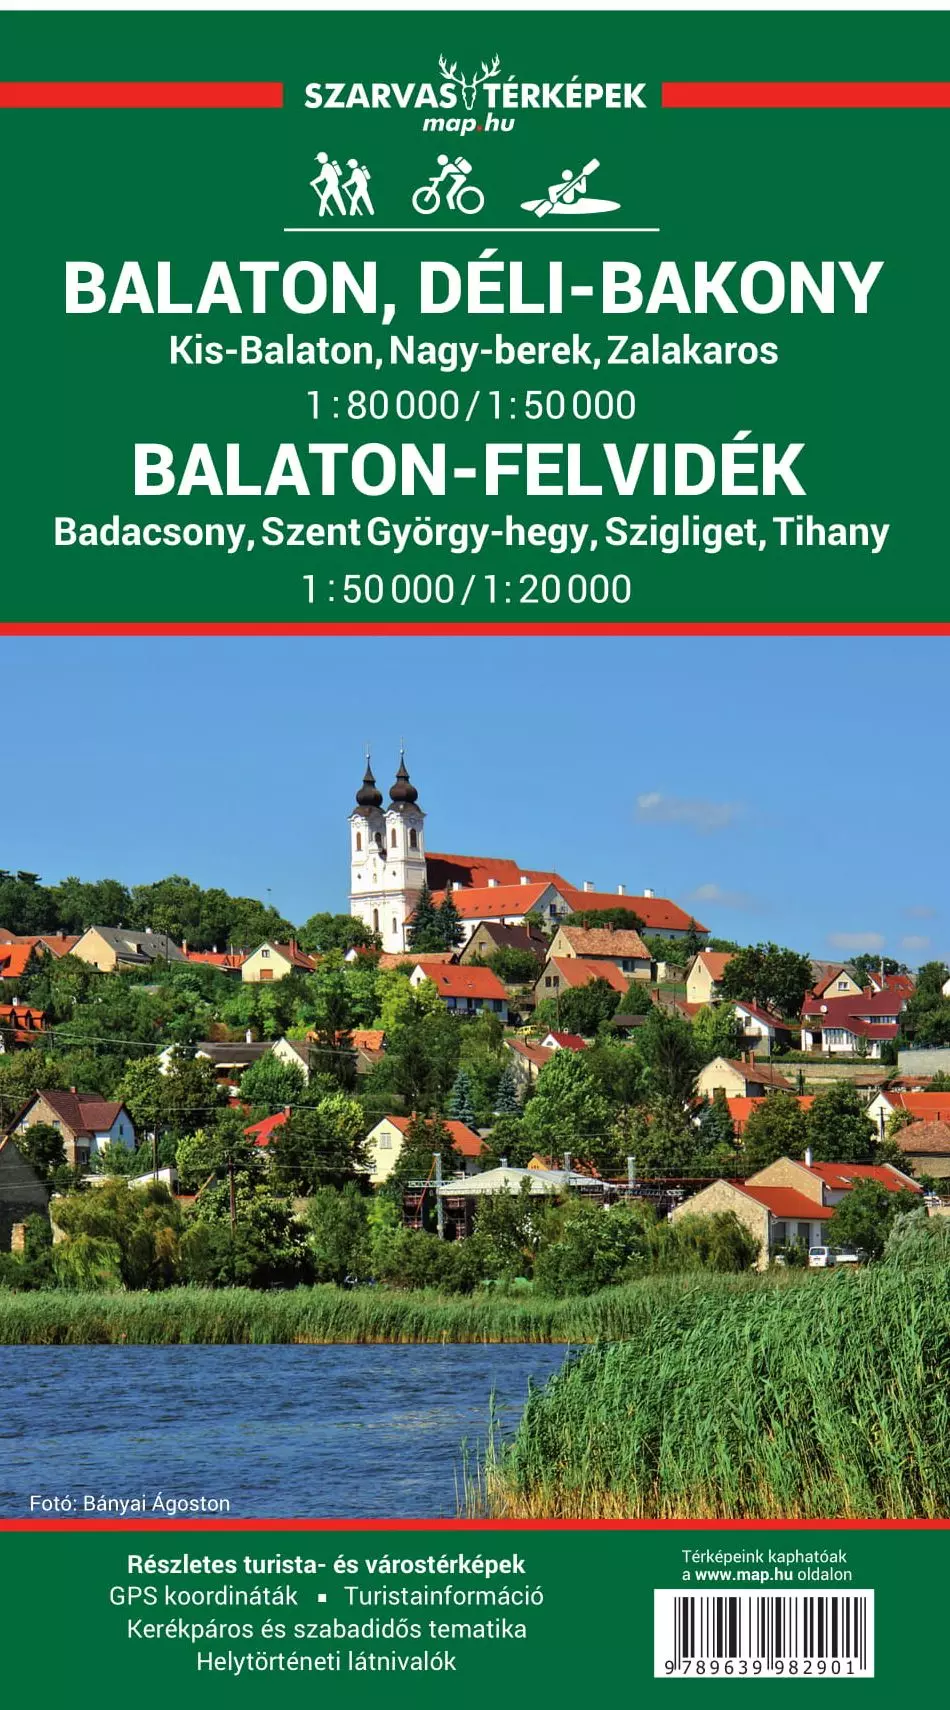 Lacul Balaton și Balaton-felvidék harta turistică